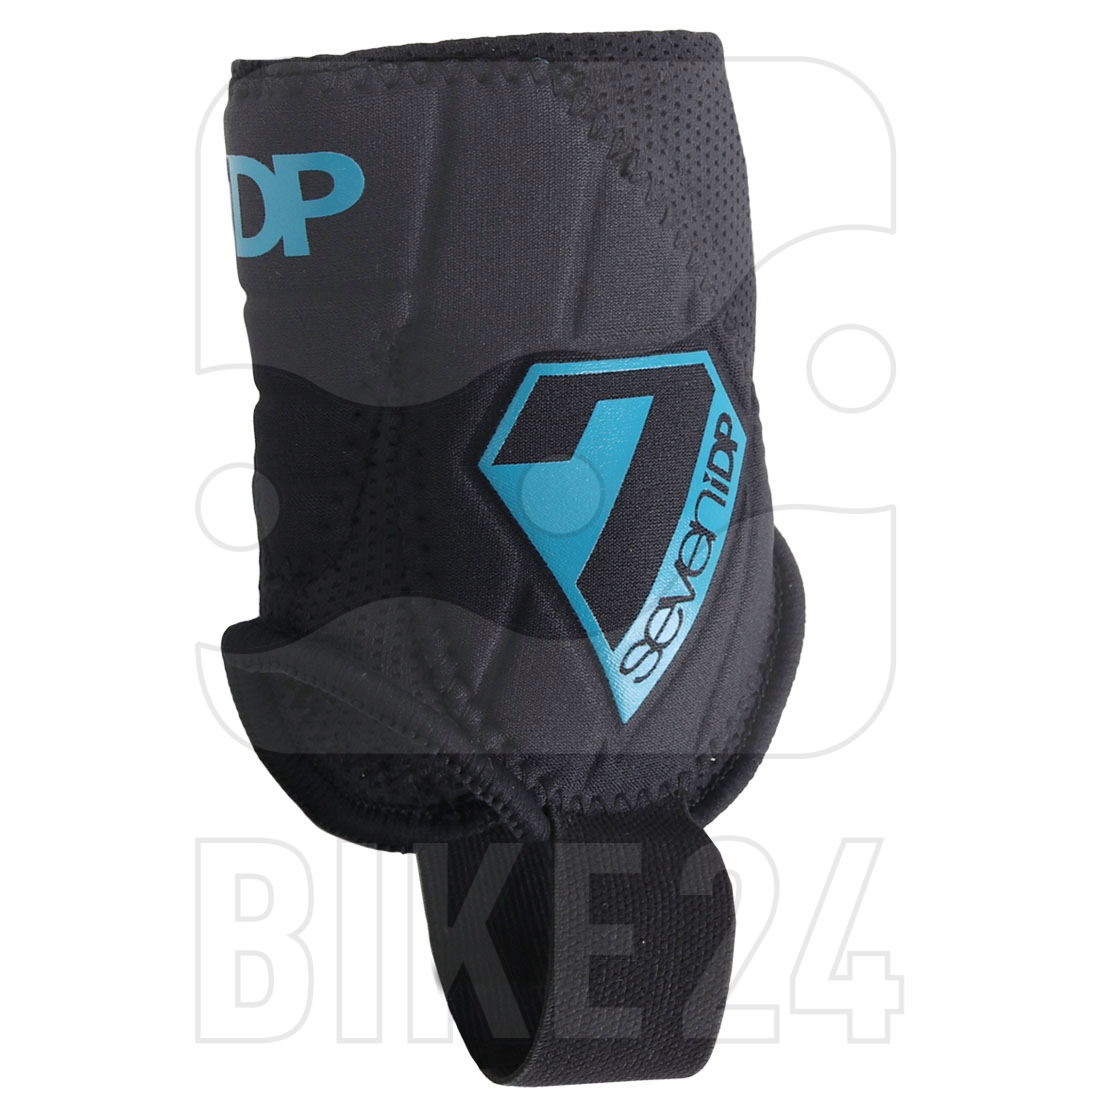 Bild von 7 Protection 7iDP Control Knöchelschoner - schwarz-blau